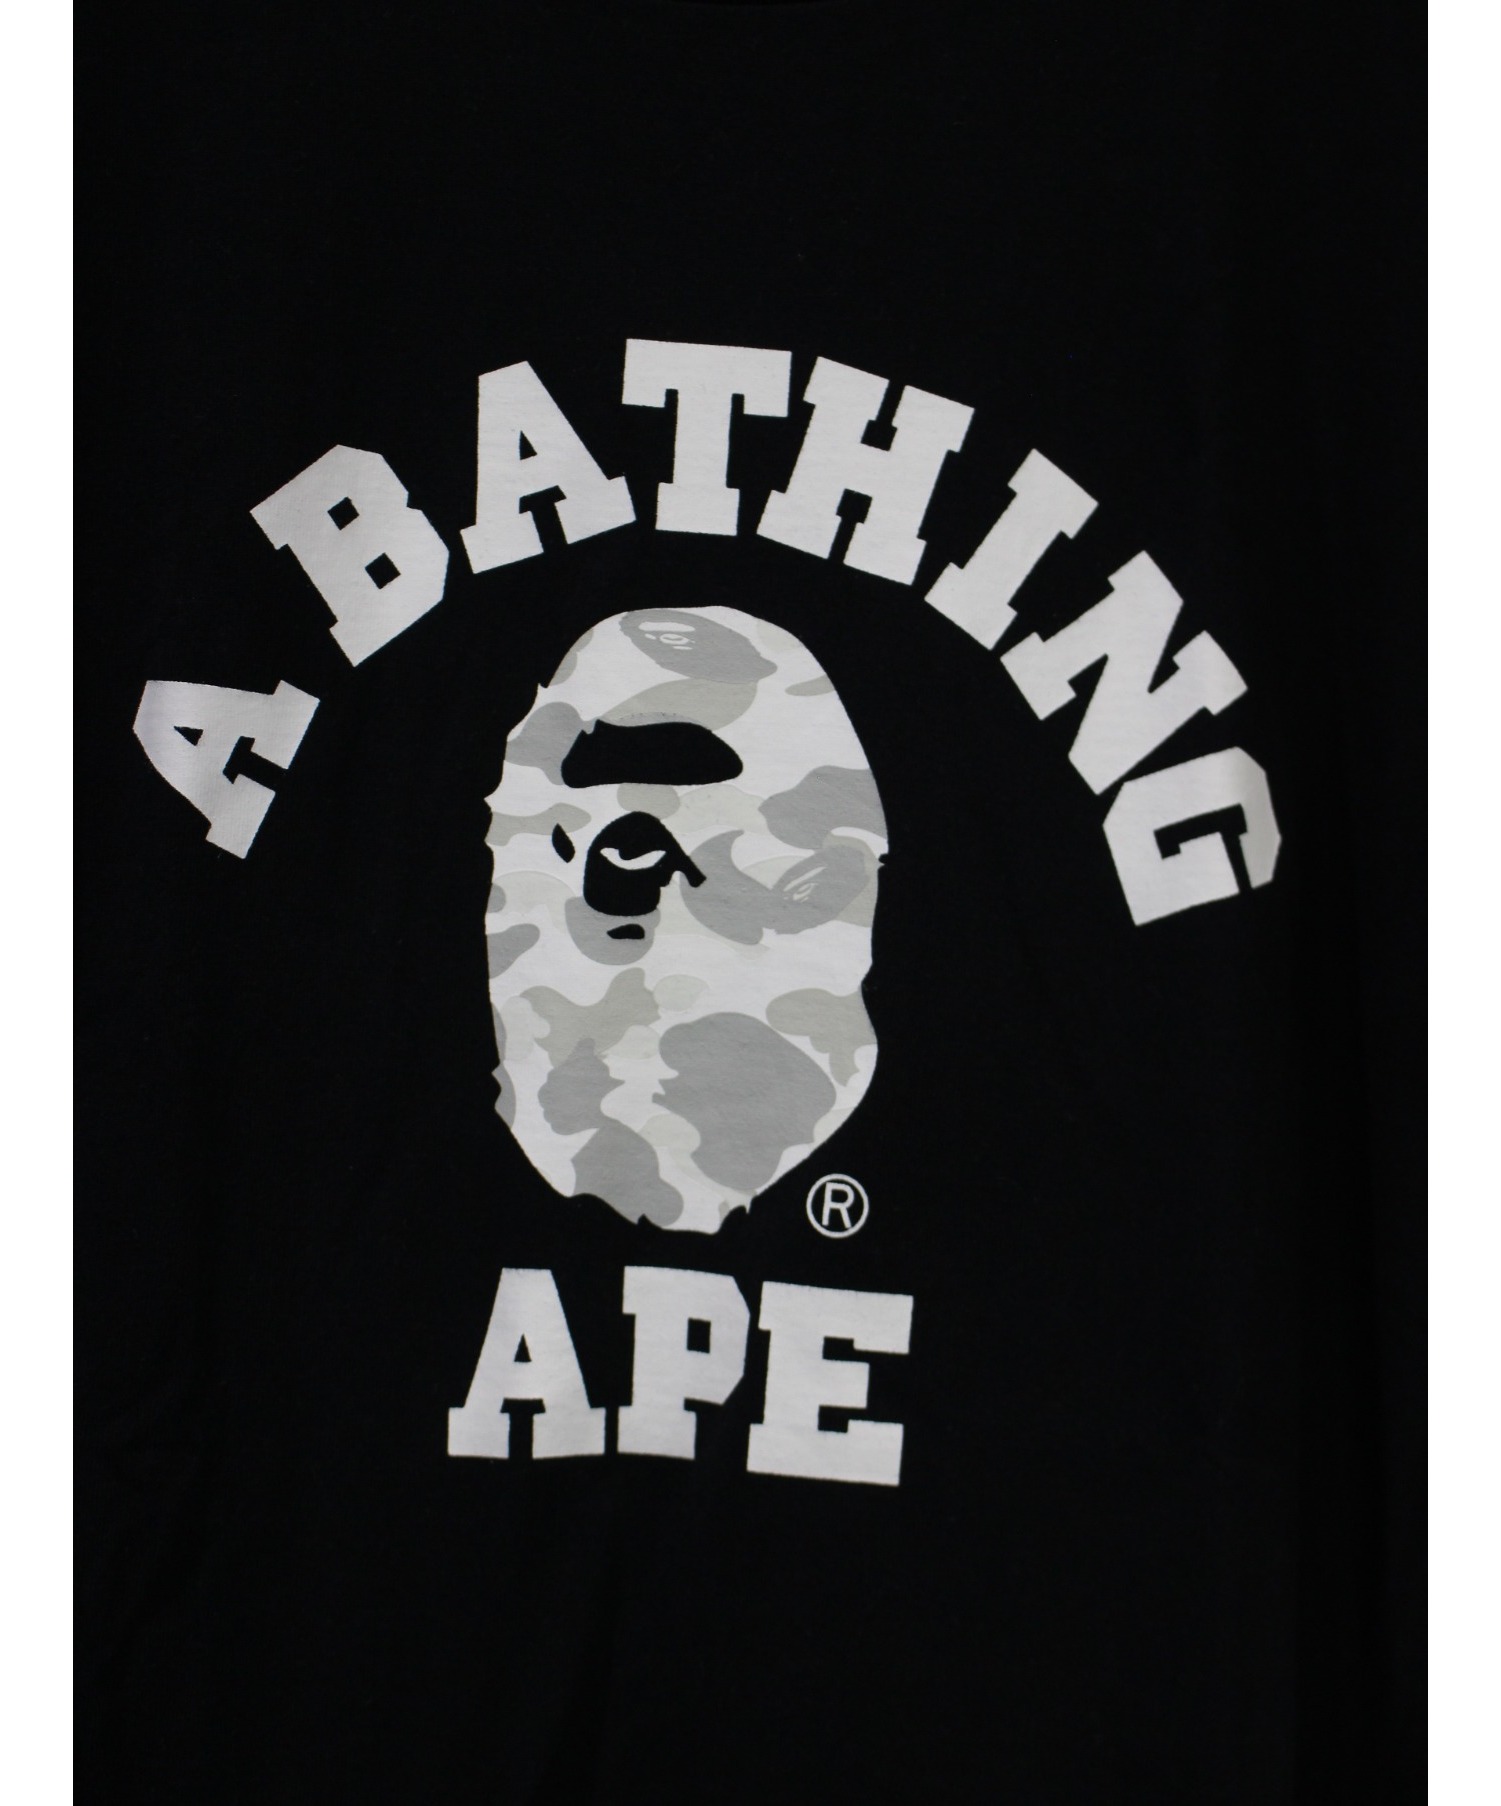 A BATHING APE (アベイシングエイプ) カレッジロゴTシャツ ブラック サイズ:XL